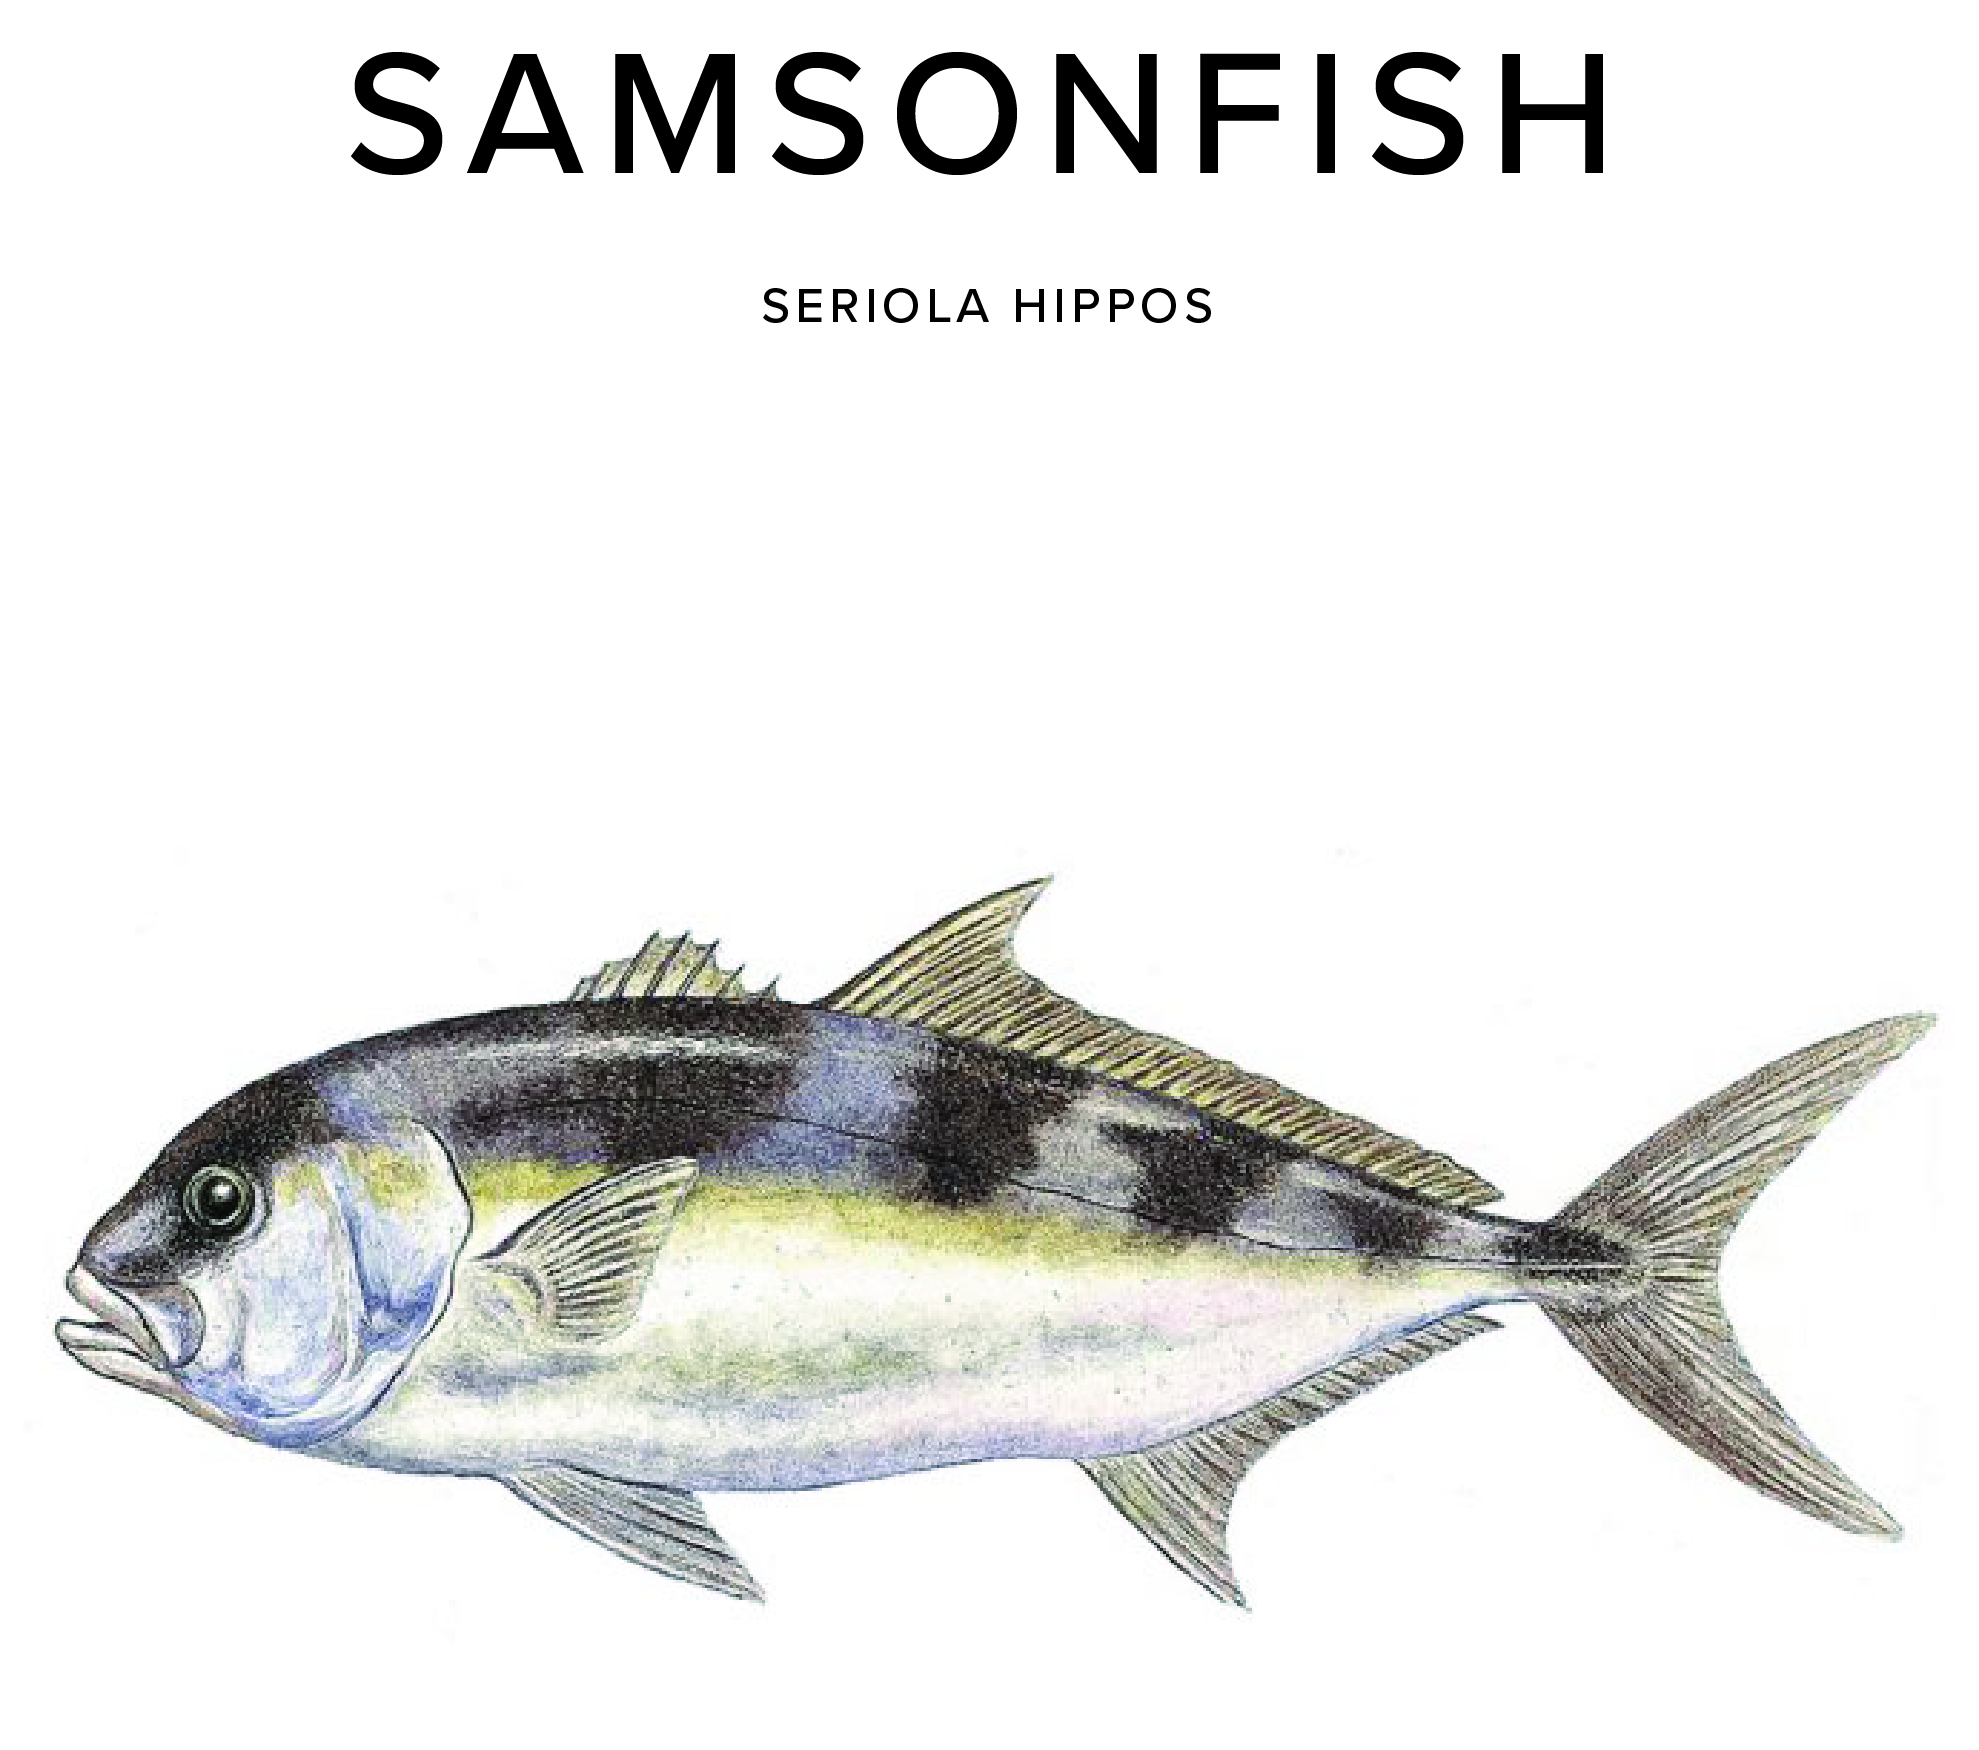 Samsonfish